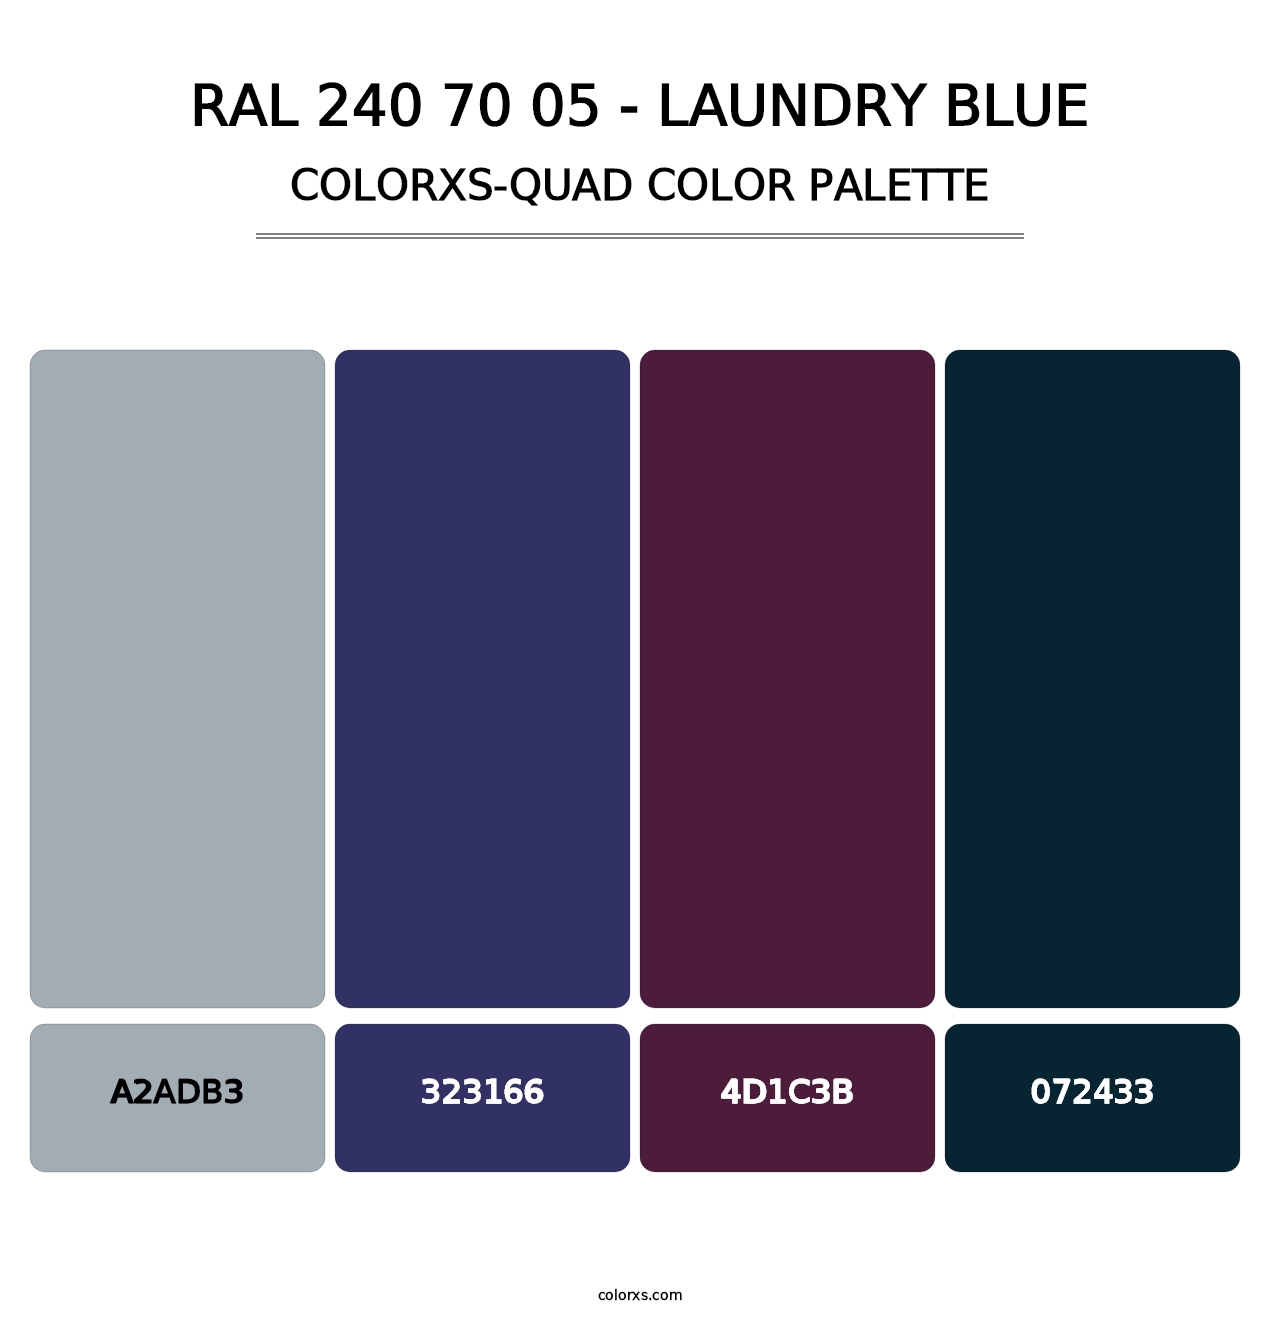 RAL 240 70 05 - Laundry Blue - Colorxs Quad Palette